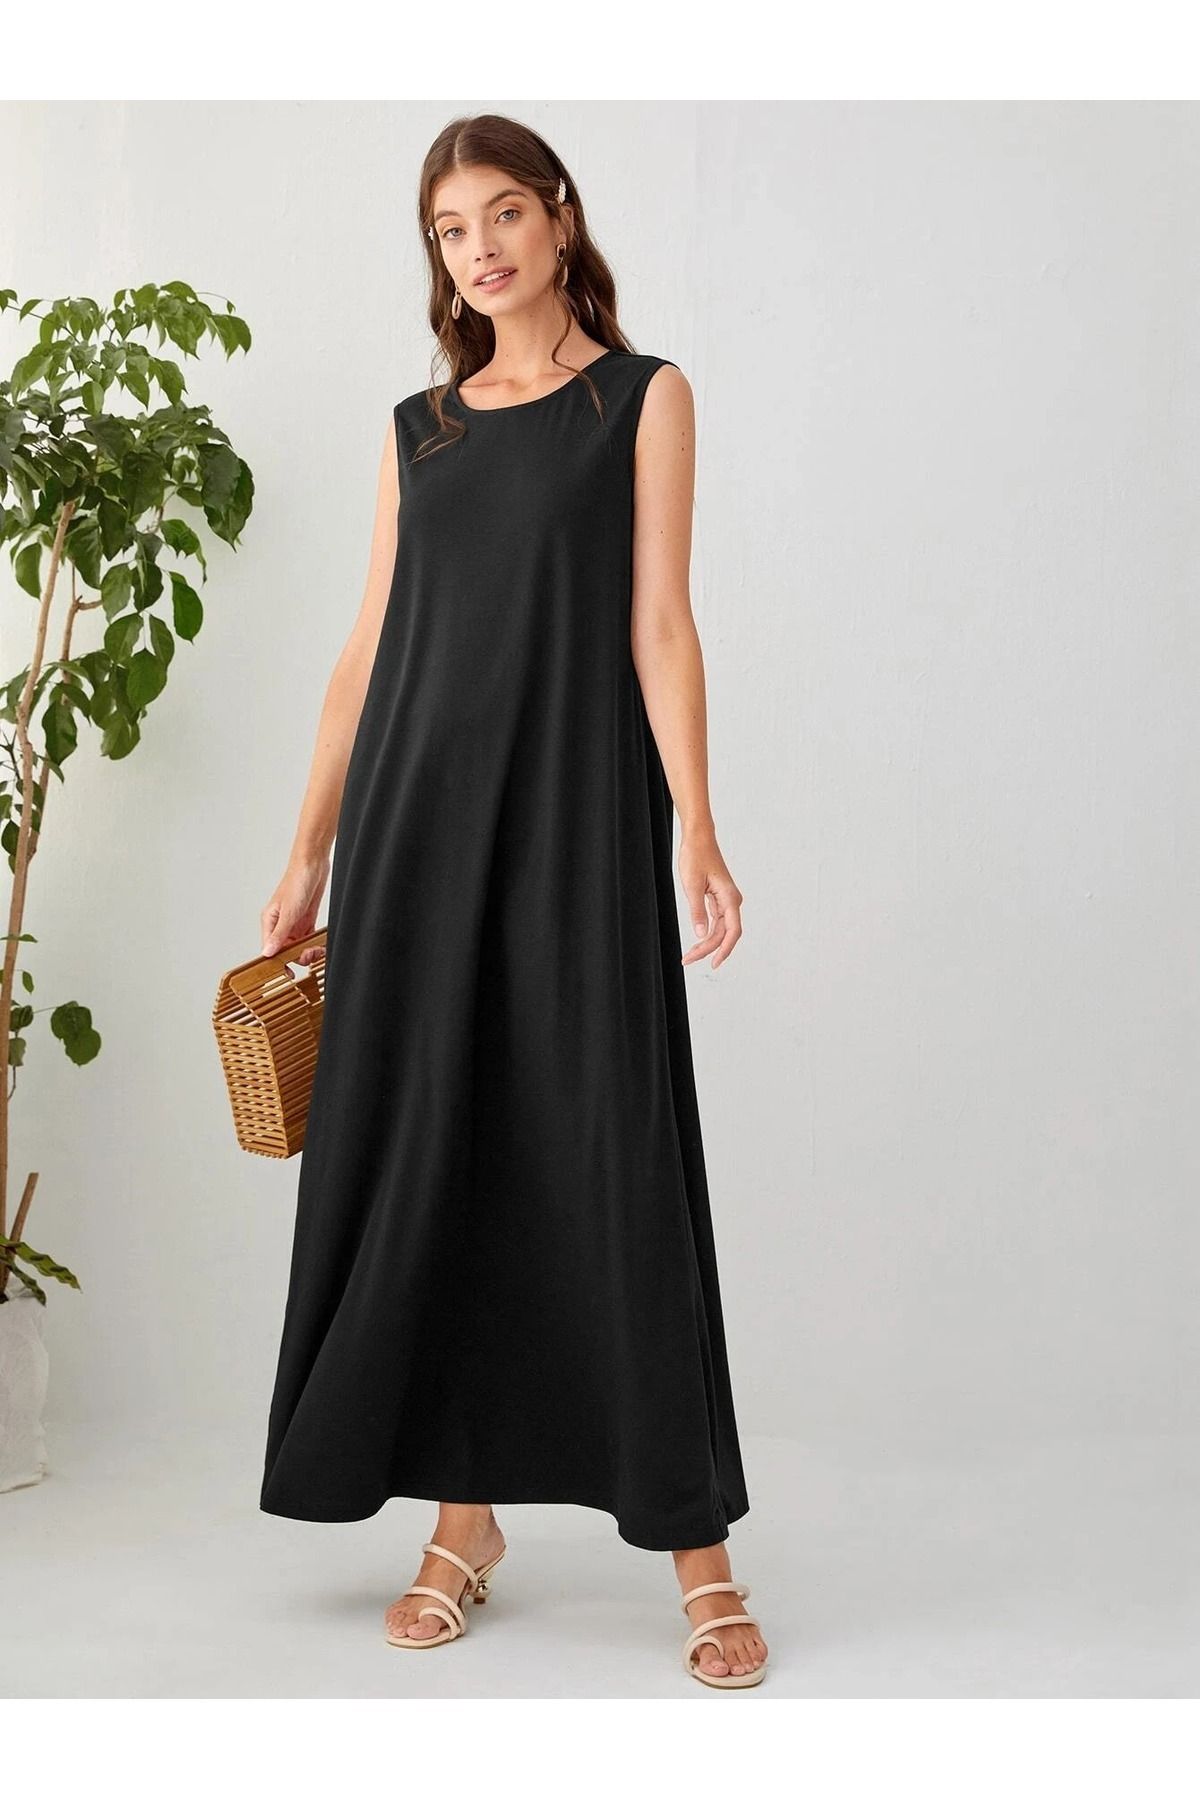 Trendseninle Siyah Kolsuz %100 Pamuk Penye Astar Elbise